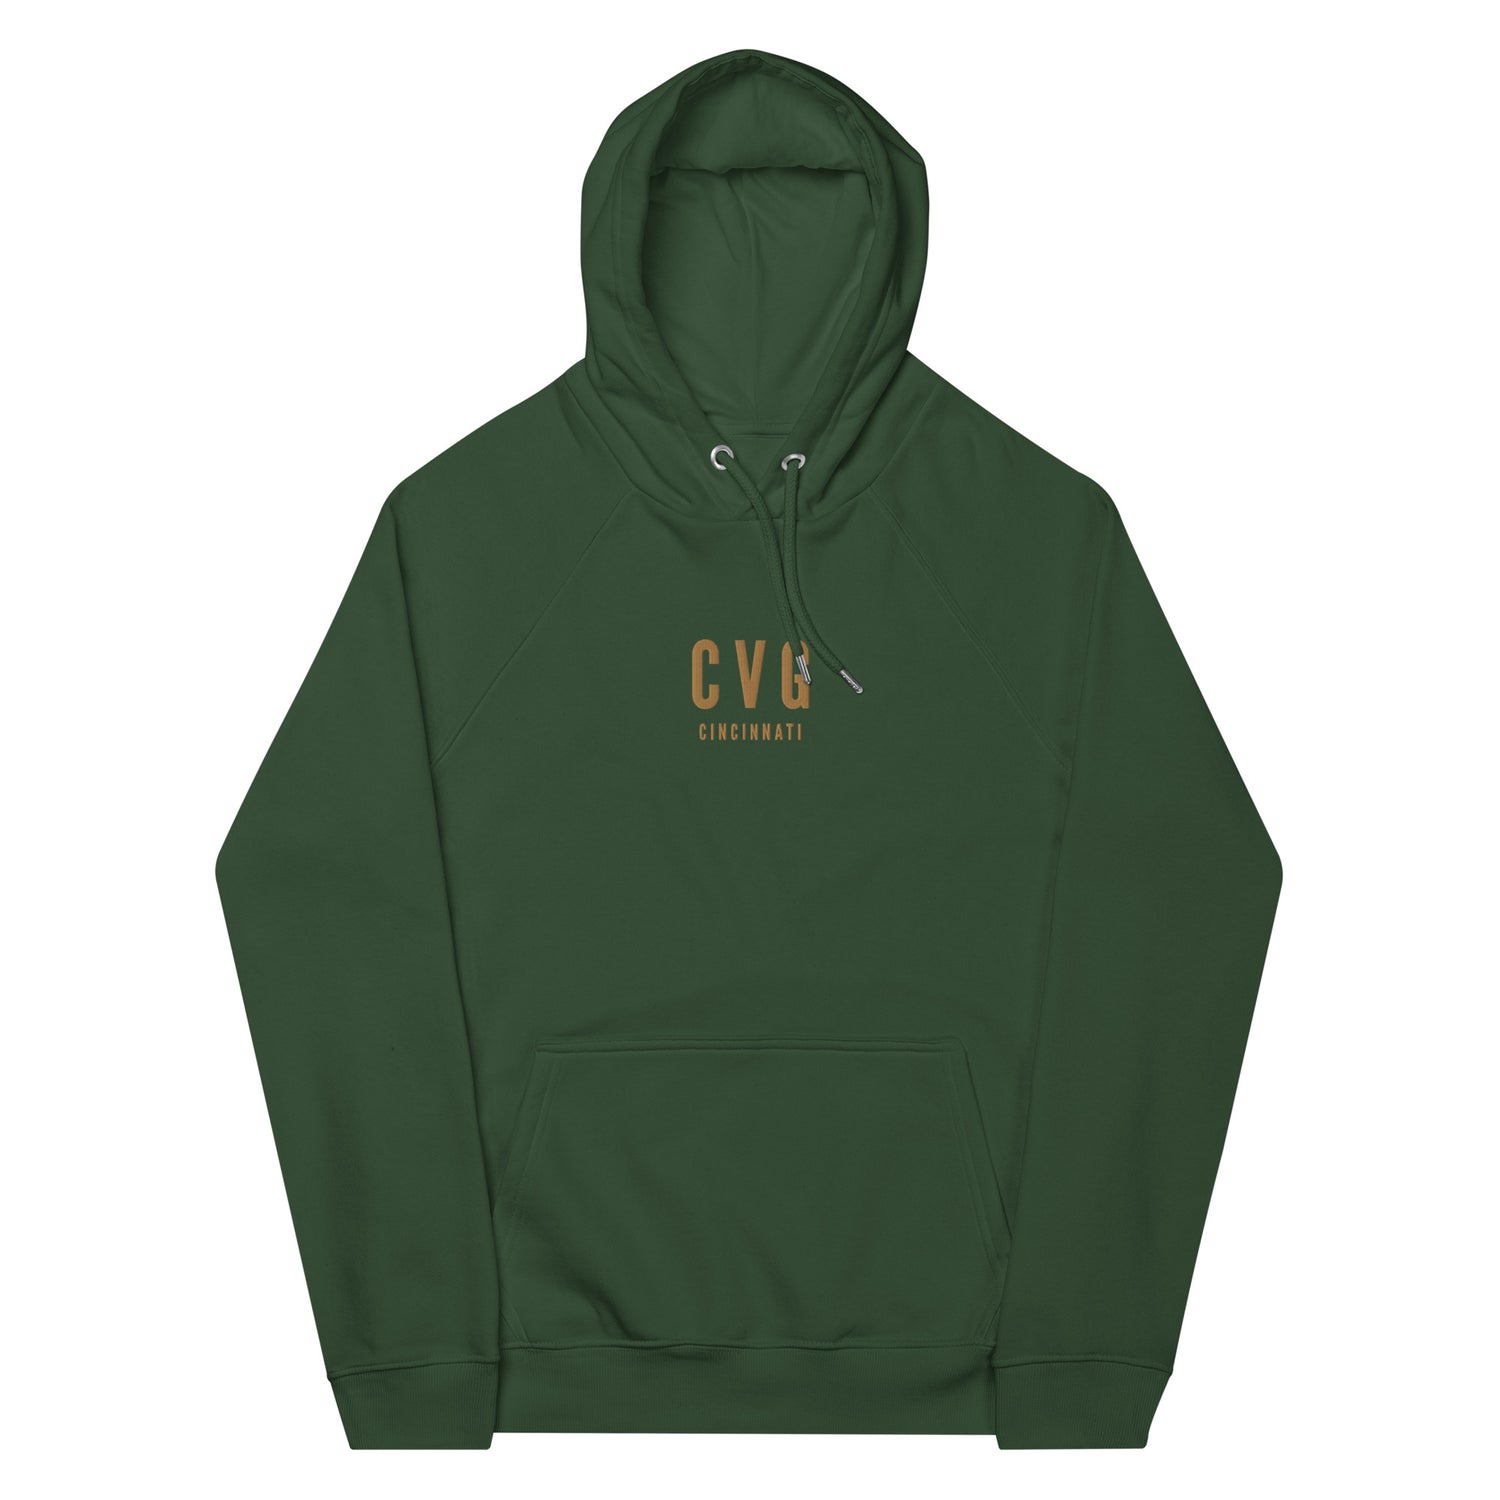 Cincinnati Ohio Hoodies and Sweatshirts • CVG Airport Code